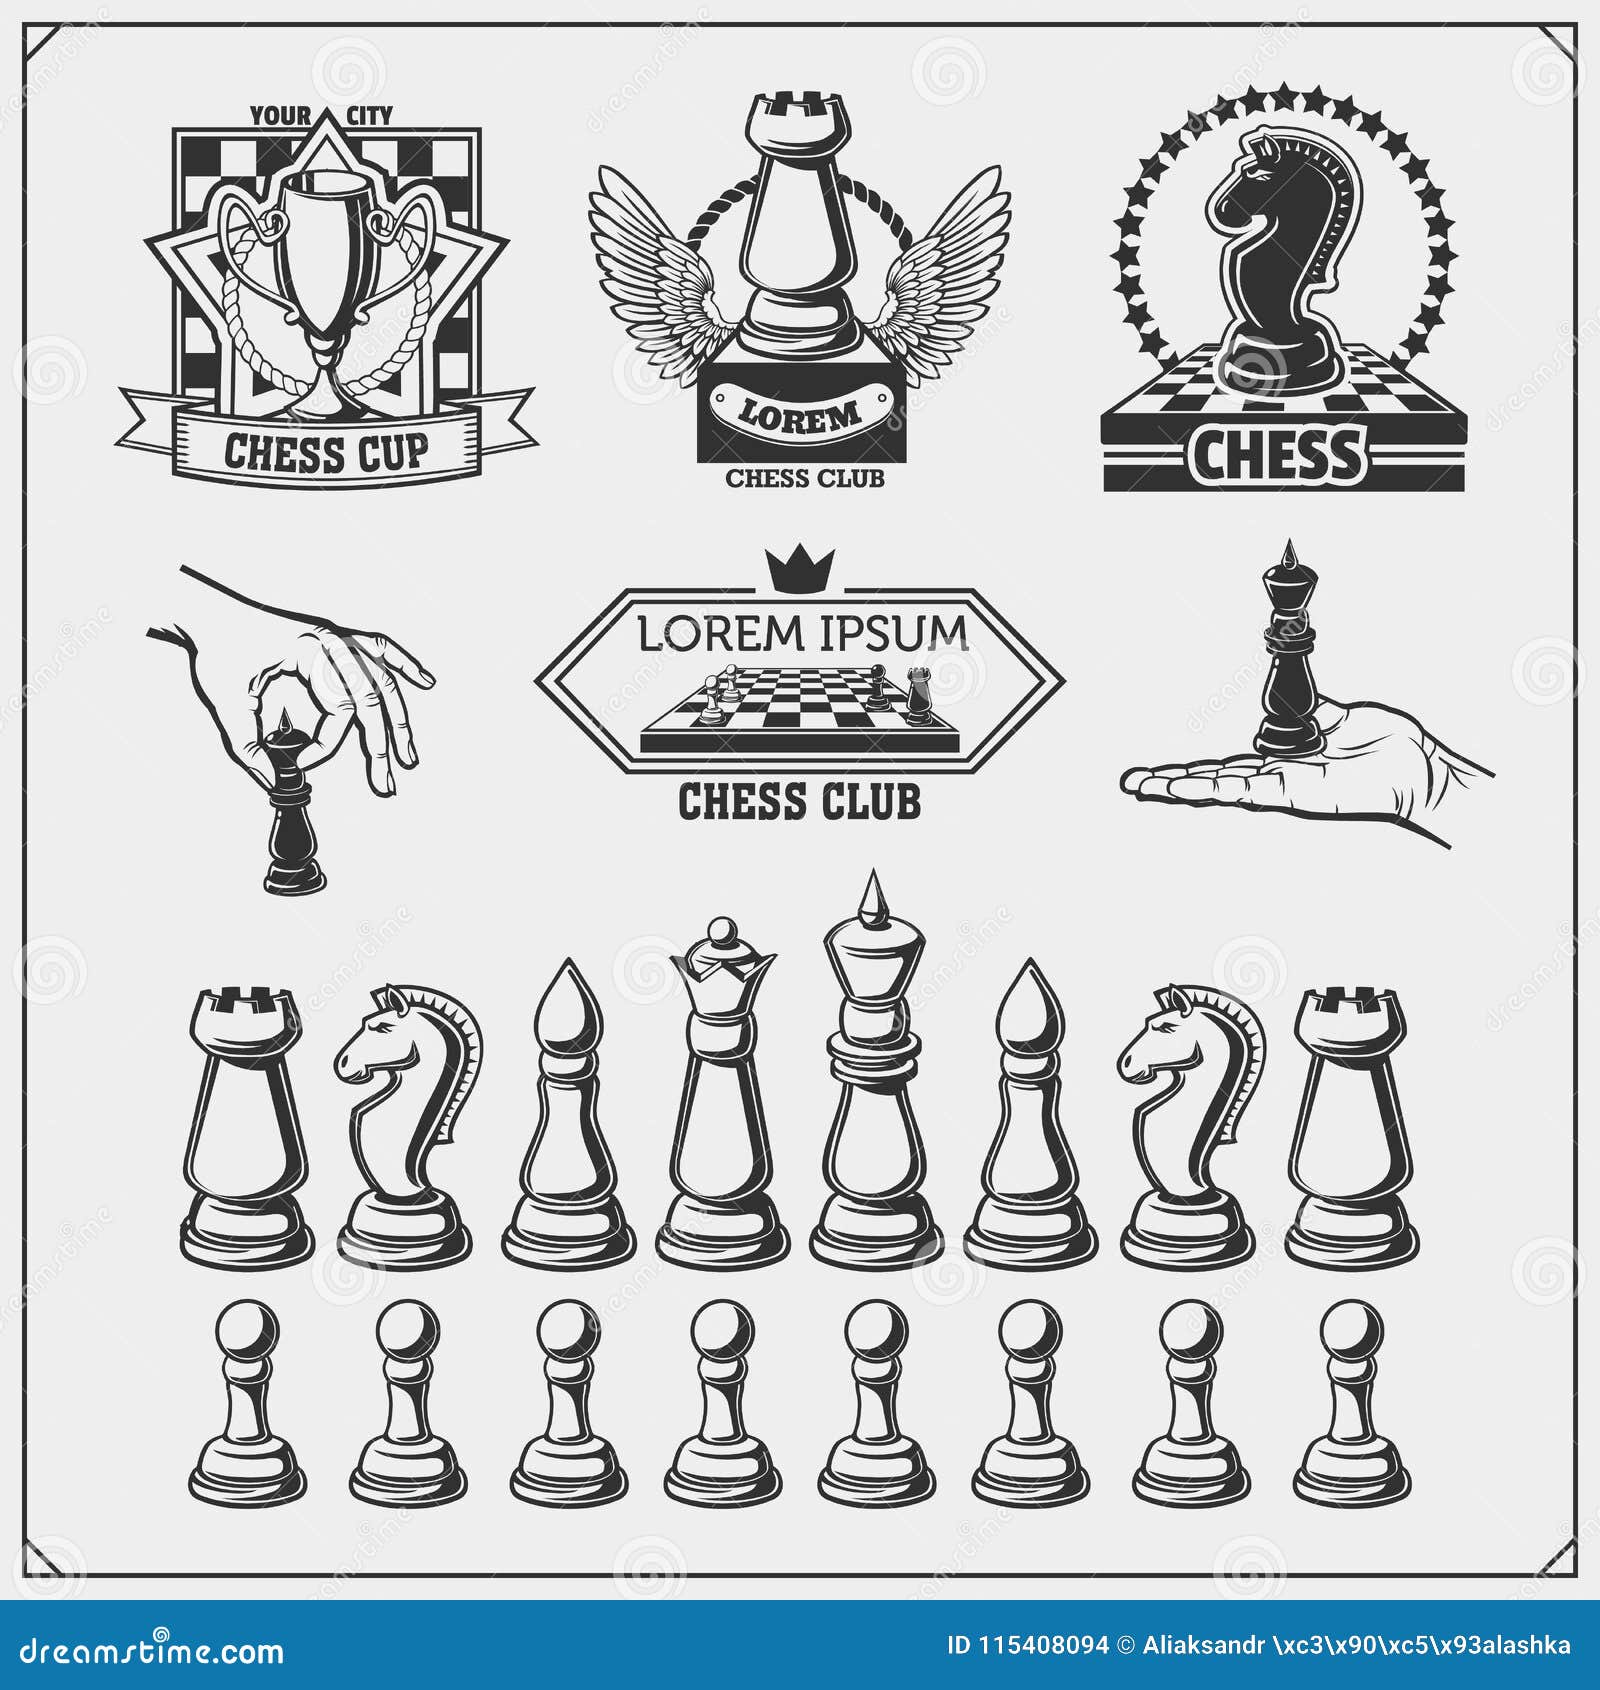 Página 68  Chess Tournament Imagens – Download Grátis no Freepik